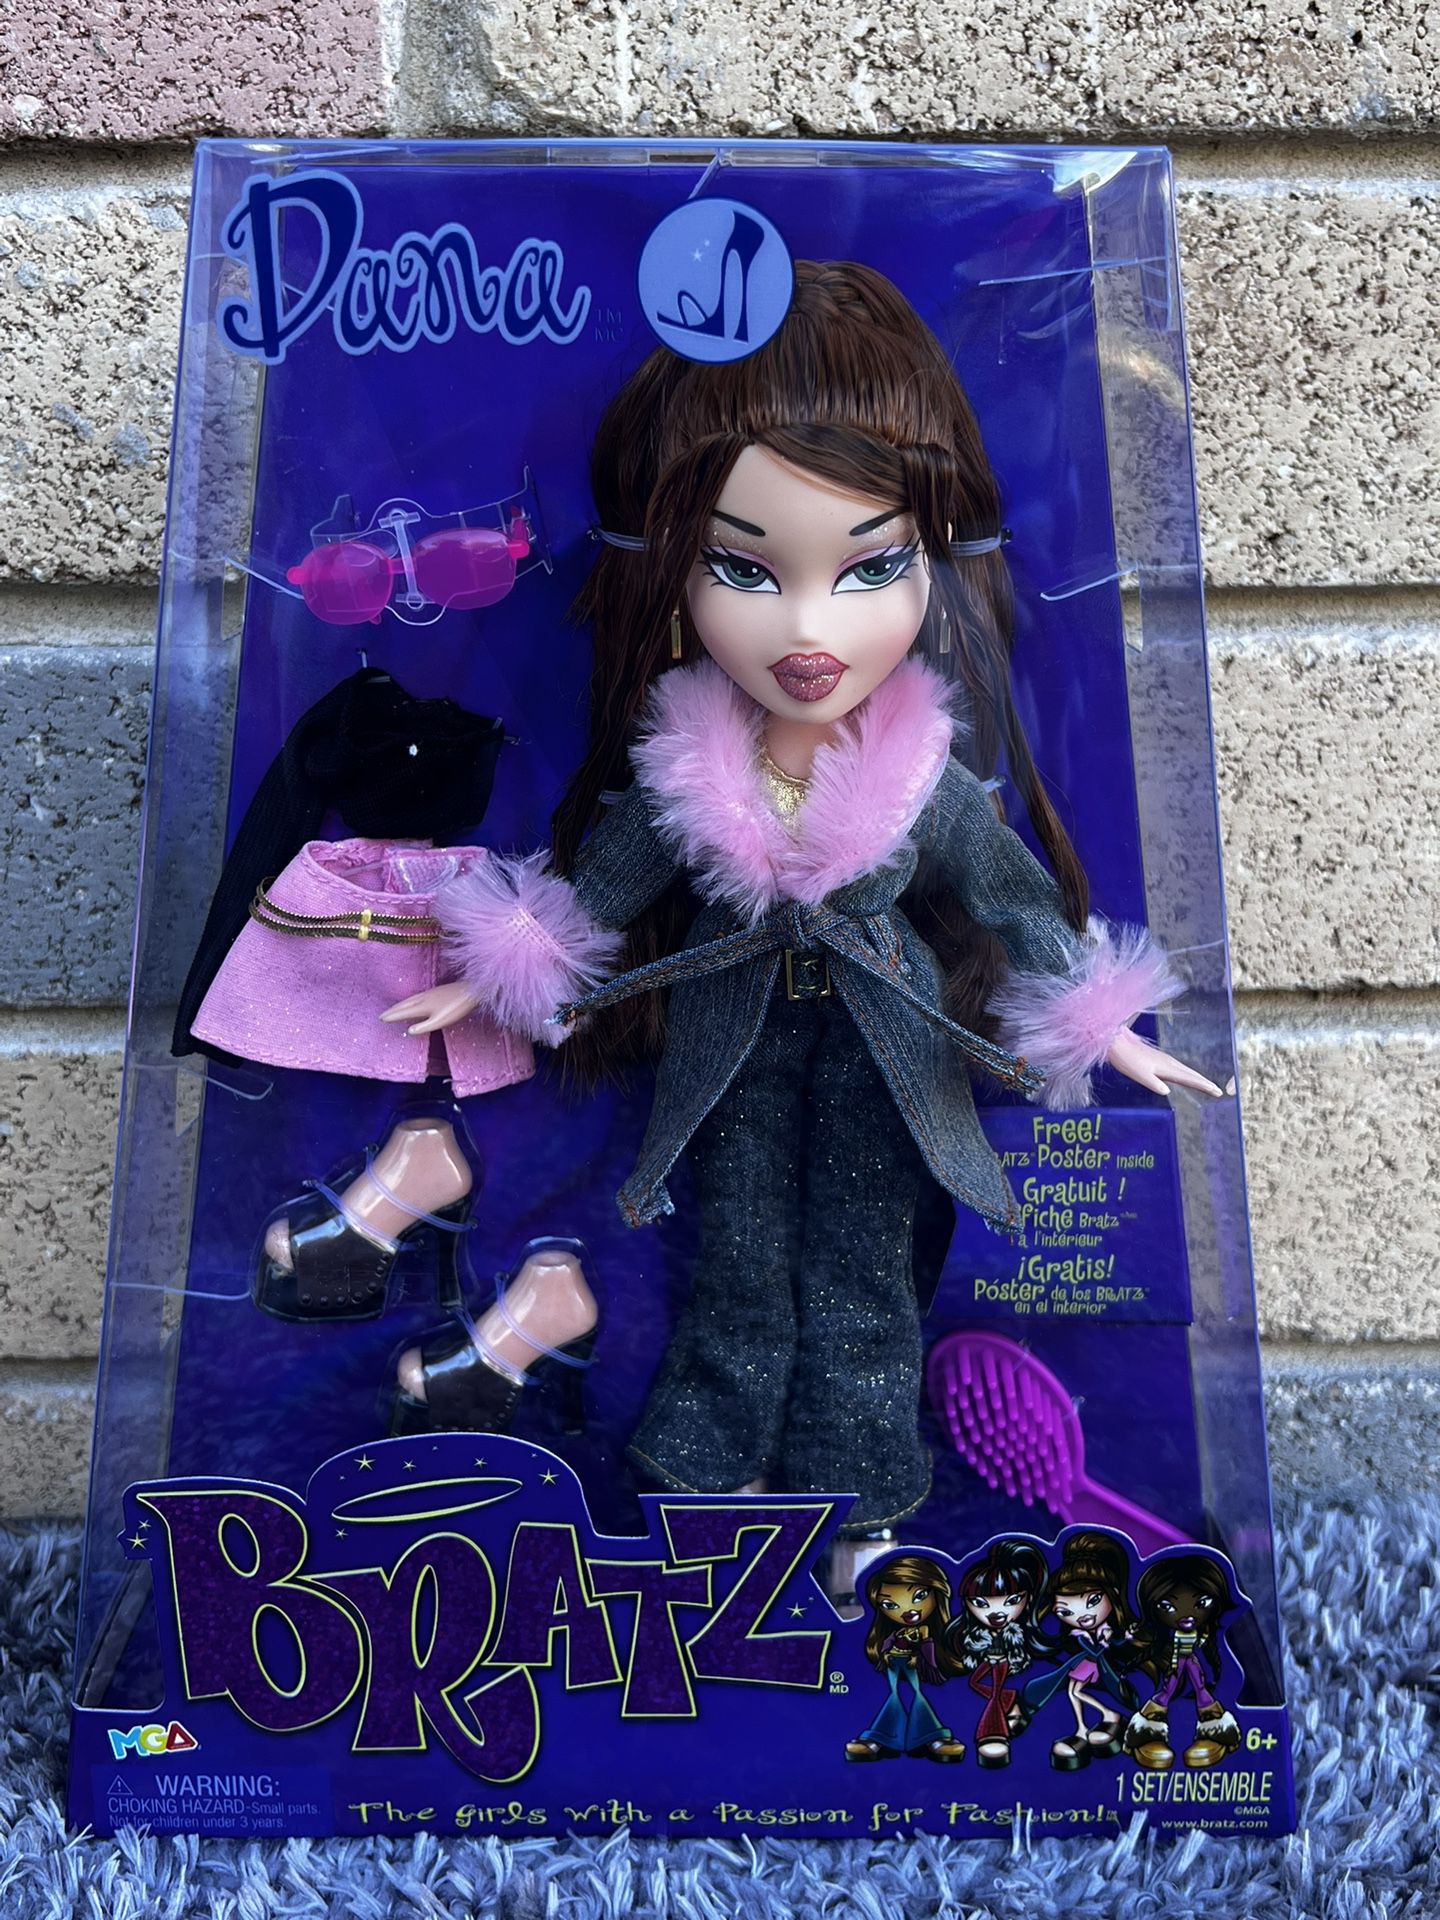 New Beautiful Authentic Bratz Doll In Box Multicolor 